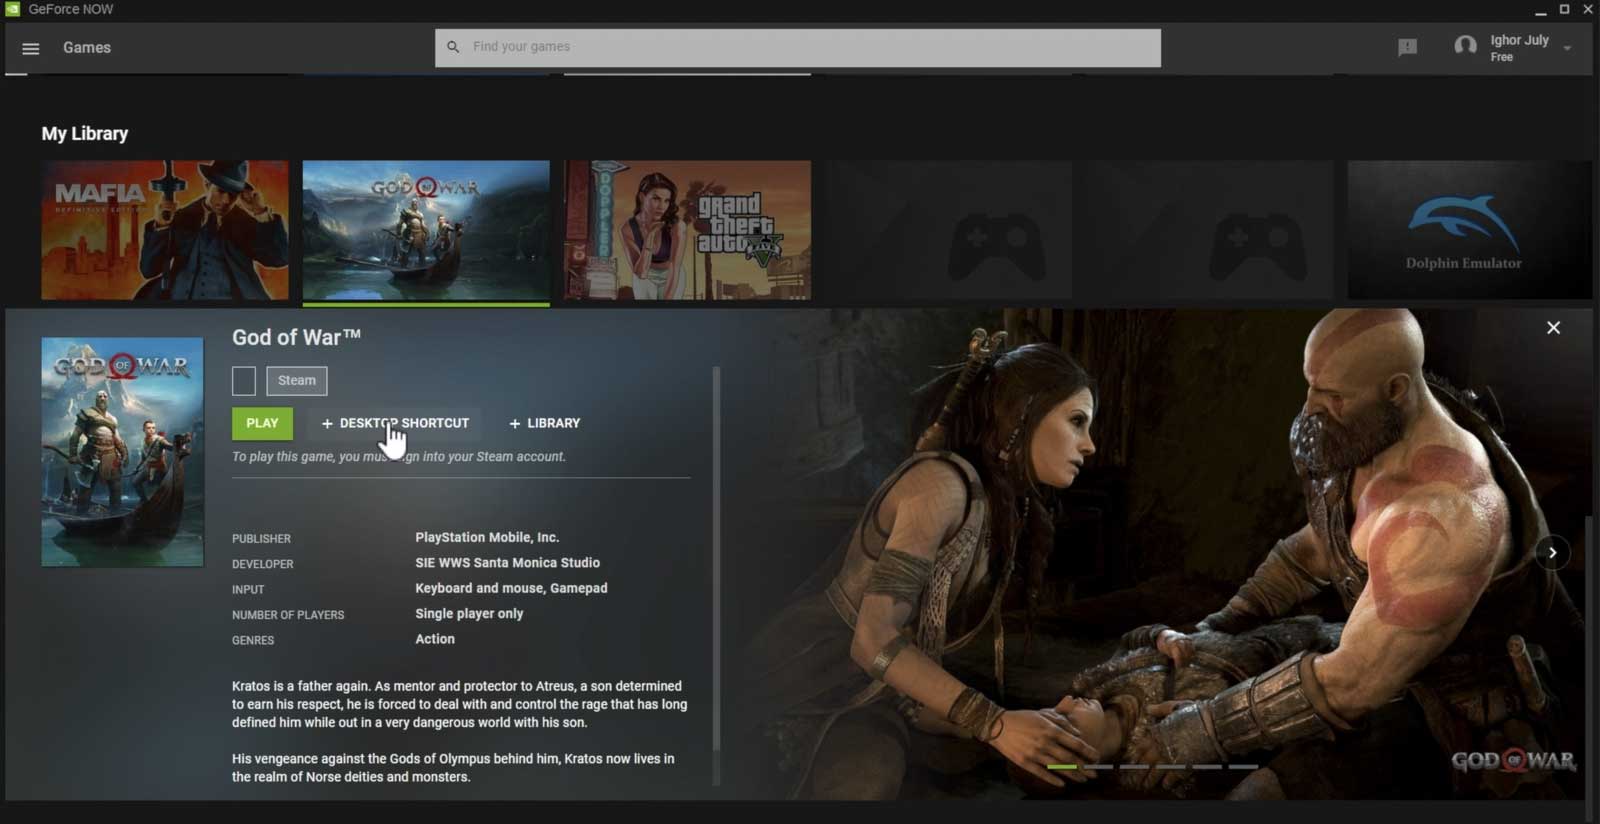 La liste des jeux Nvidia sur PC qui incluent God of War a été découverte.